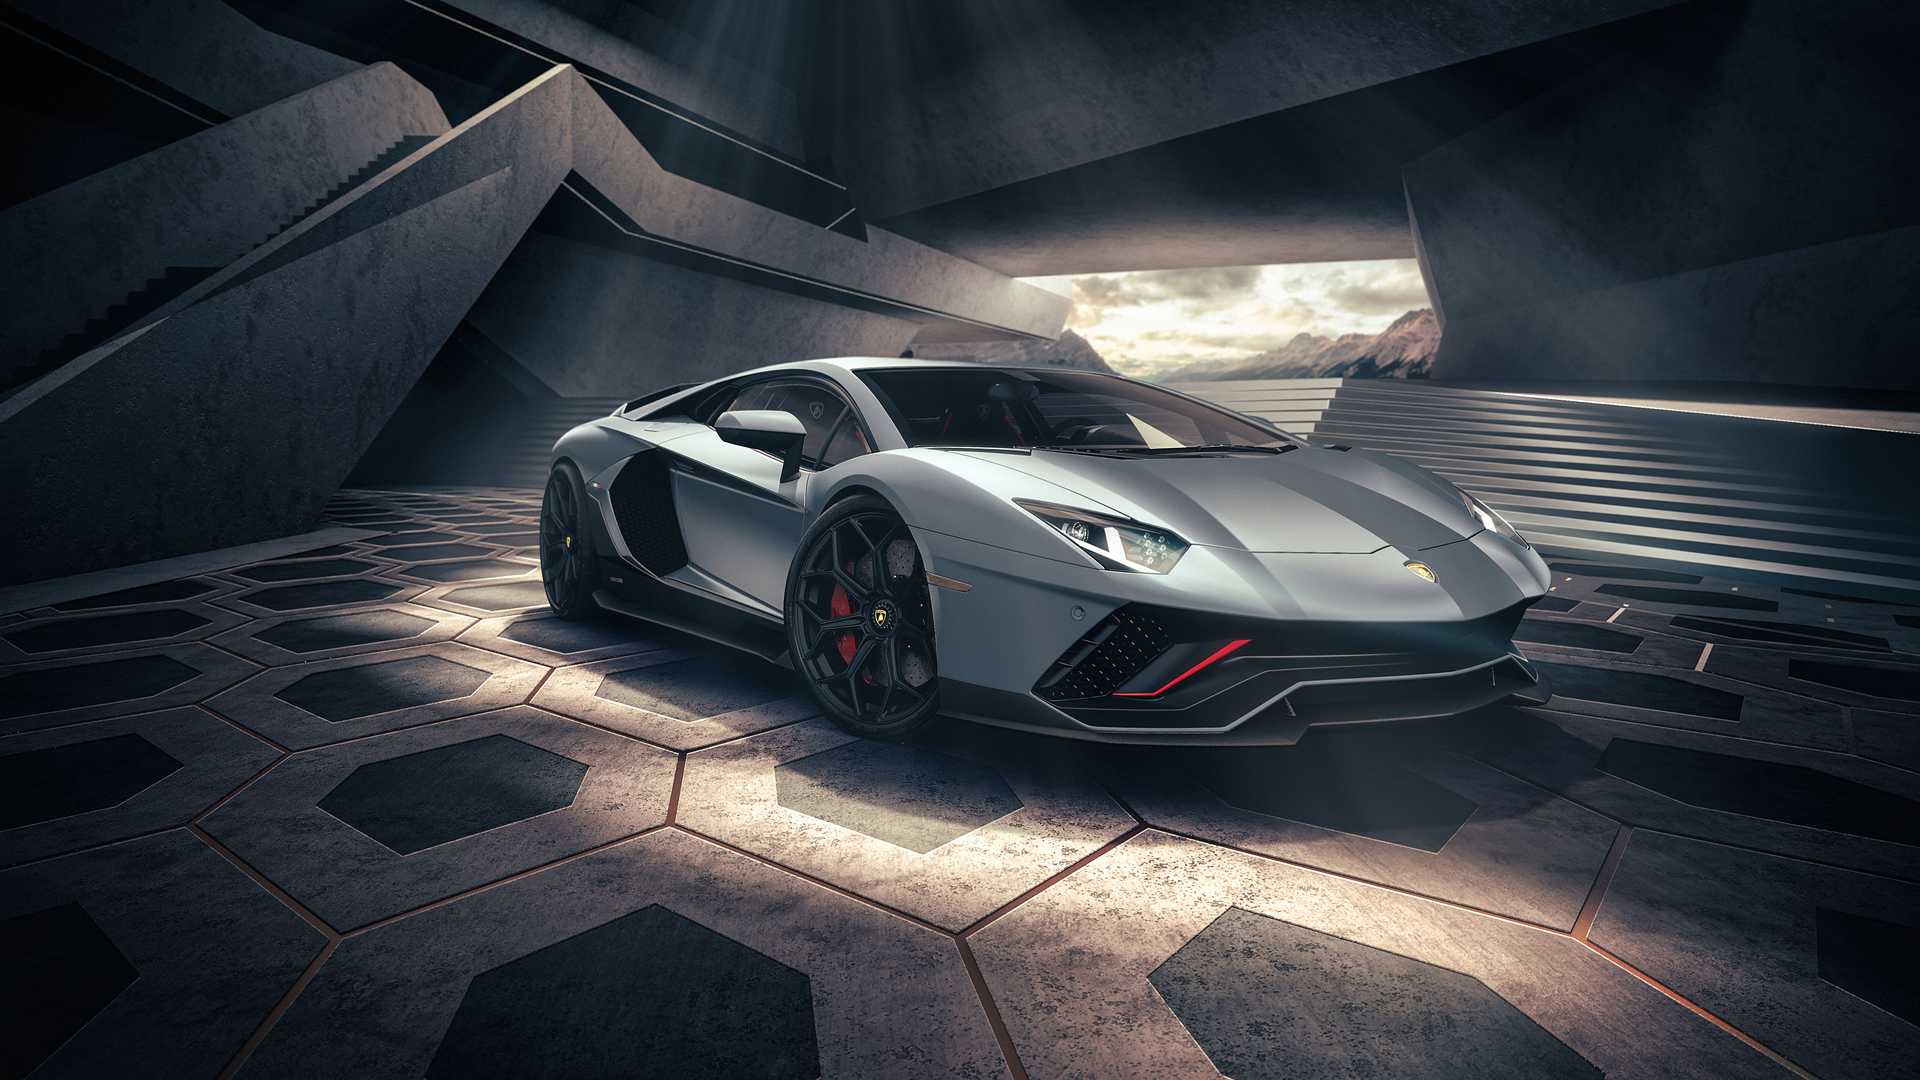 Đam mê với Lamborghini? Hãy thưởng thức những hình ảnh ngoạn mục về những mẫu xe điển hình của Lamborghini trên màn hình của bạn. Chúng tôi mang đến cho bạn những hình ảnh đẹp nhất, từ các mẫu xe thể thao bắt mắt cho đến các mẫu siêu xe cổ điển.